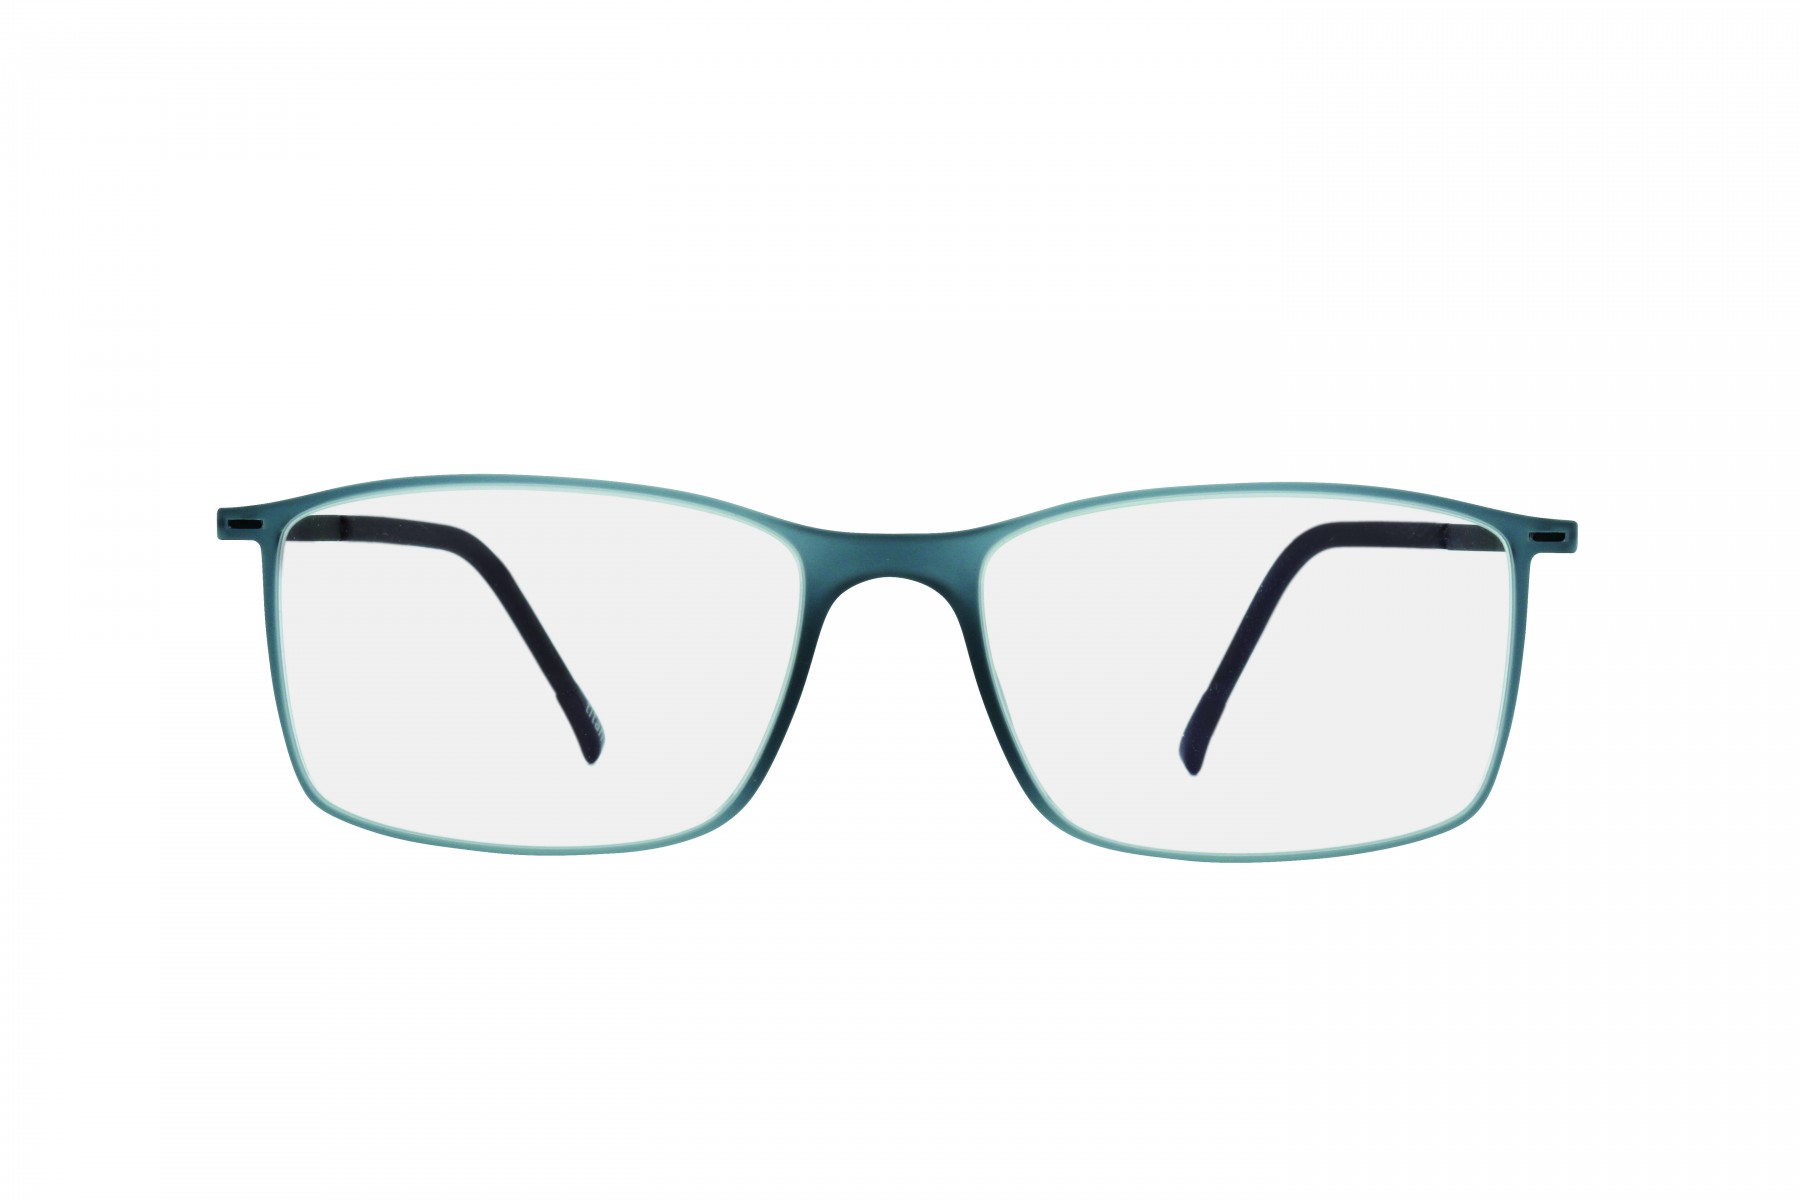 SILHOUETTE 2902 6051 TAM 55- Oculos de Grau